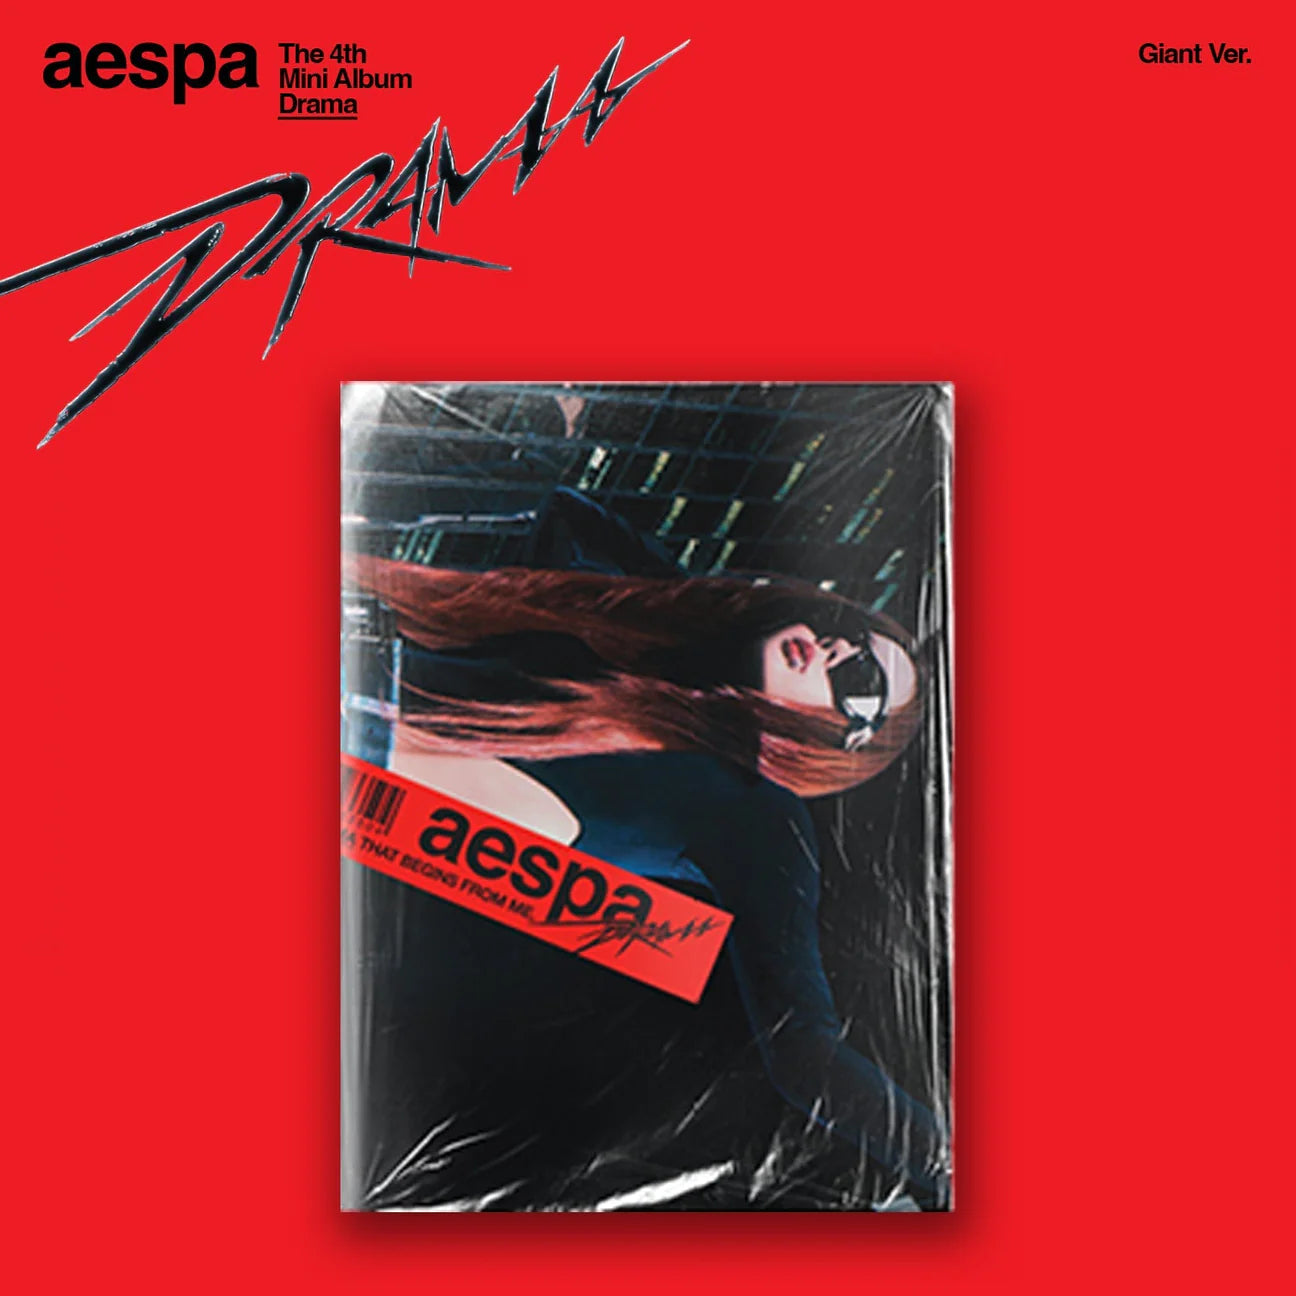 AESPA - 4TH MINI ALBUM [DRAMA] (GIANT VER.) (4 VERSIONS)